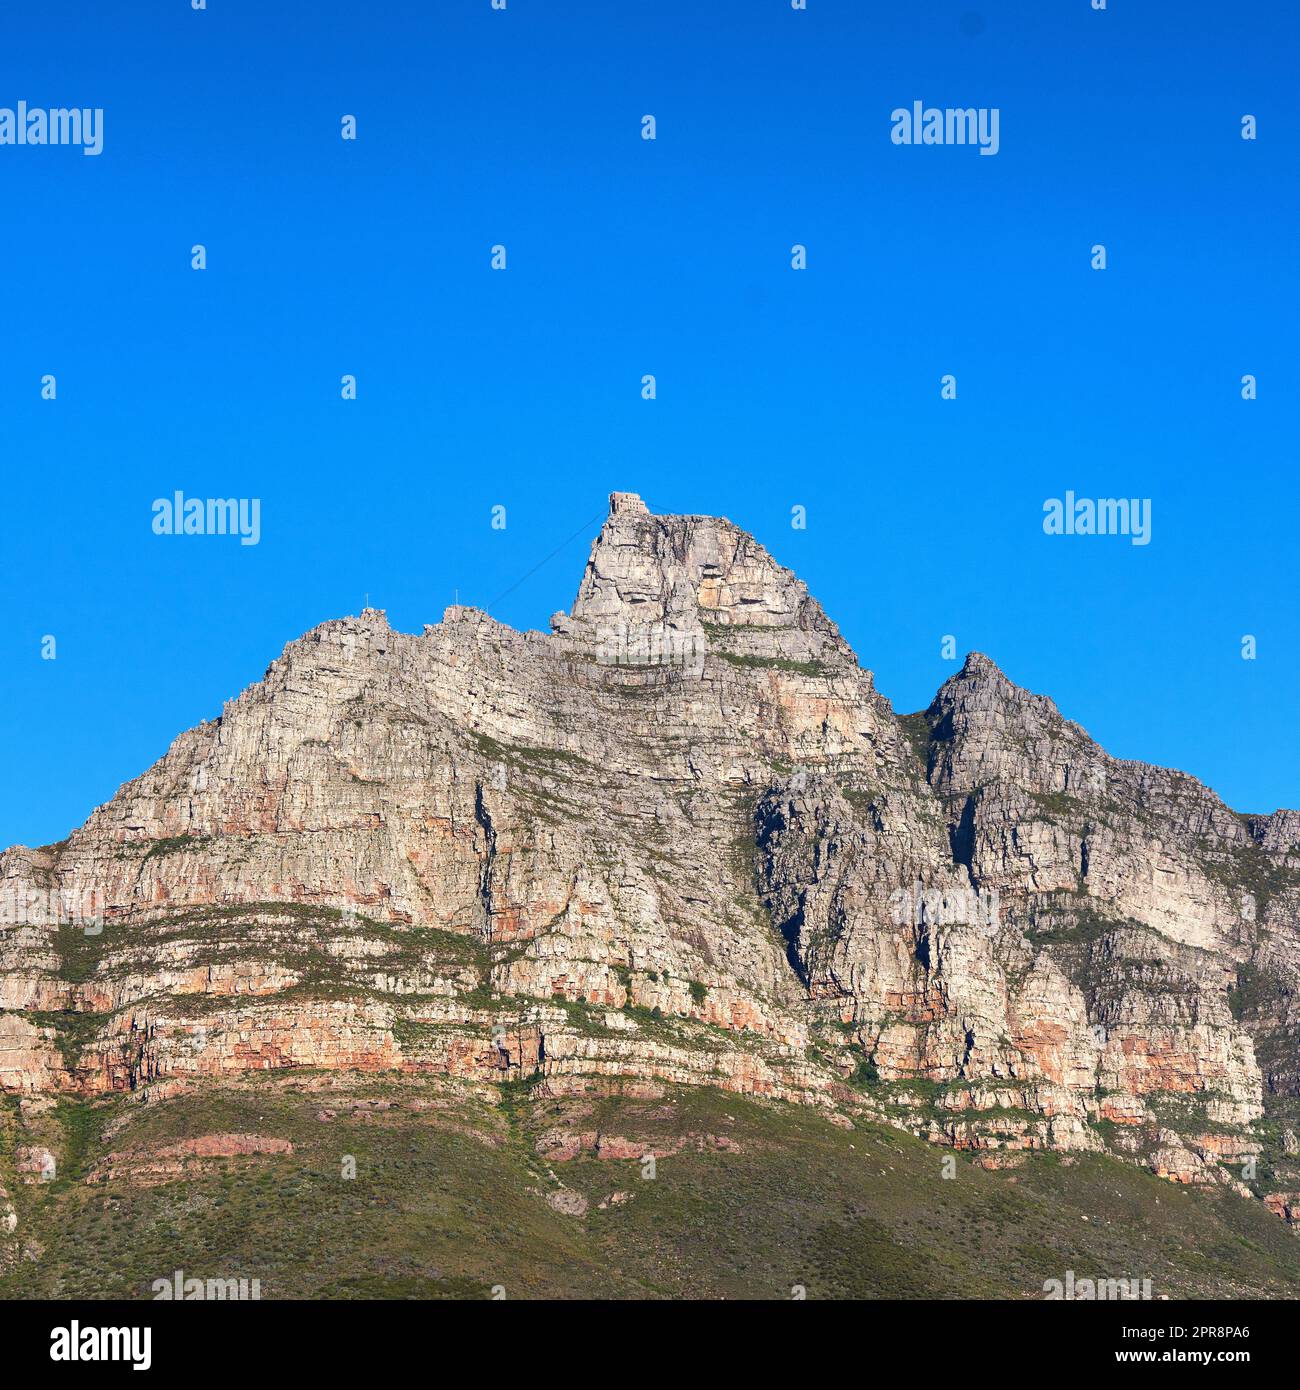 Une vue panoramique sur la montagne de la Table au Cap, en Afrique du Sud, sur un fond bleu ciel d'en dessous. Une vue panoramique d'un monument emblématique et d'une destination de voyage célèbre avec copyspace Banque D'Images